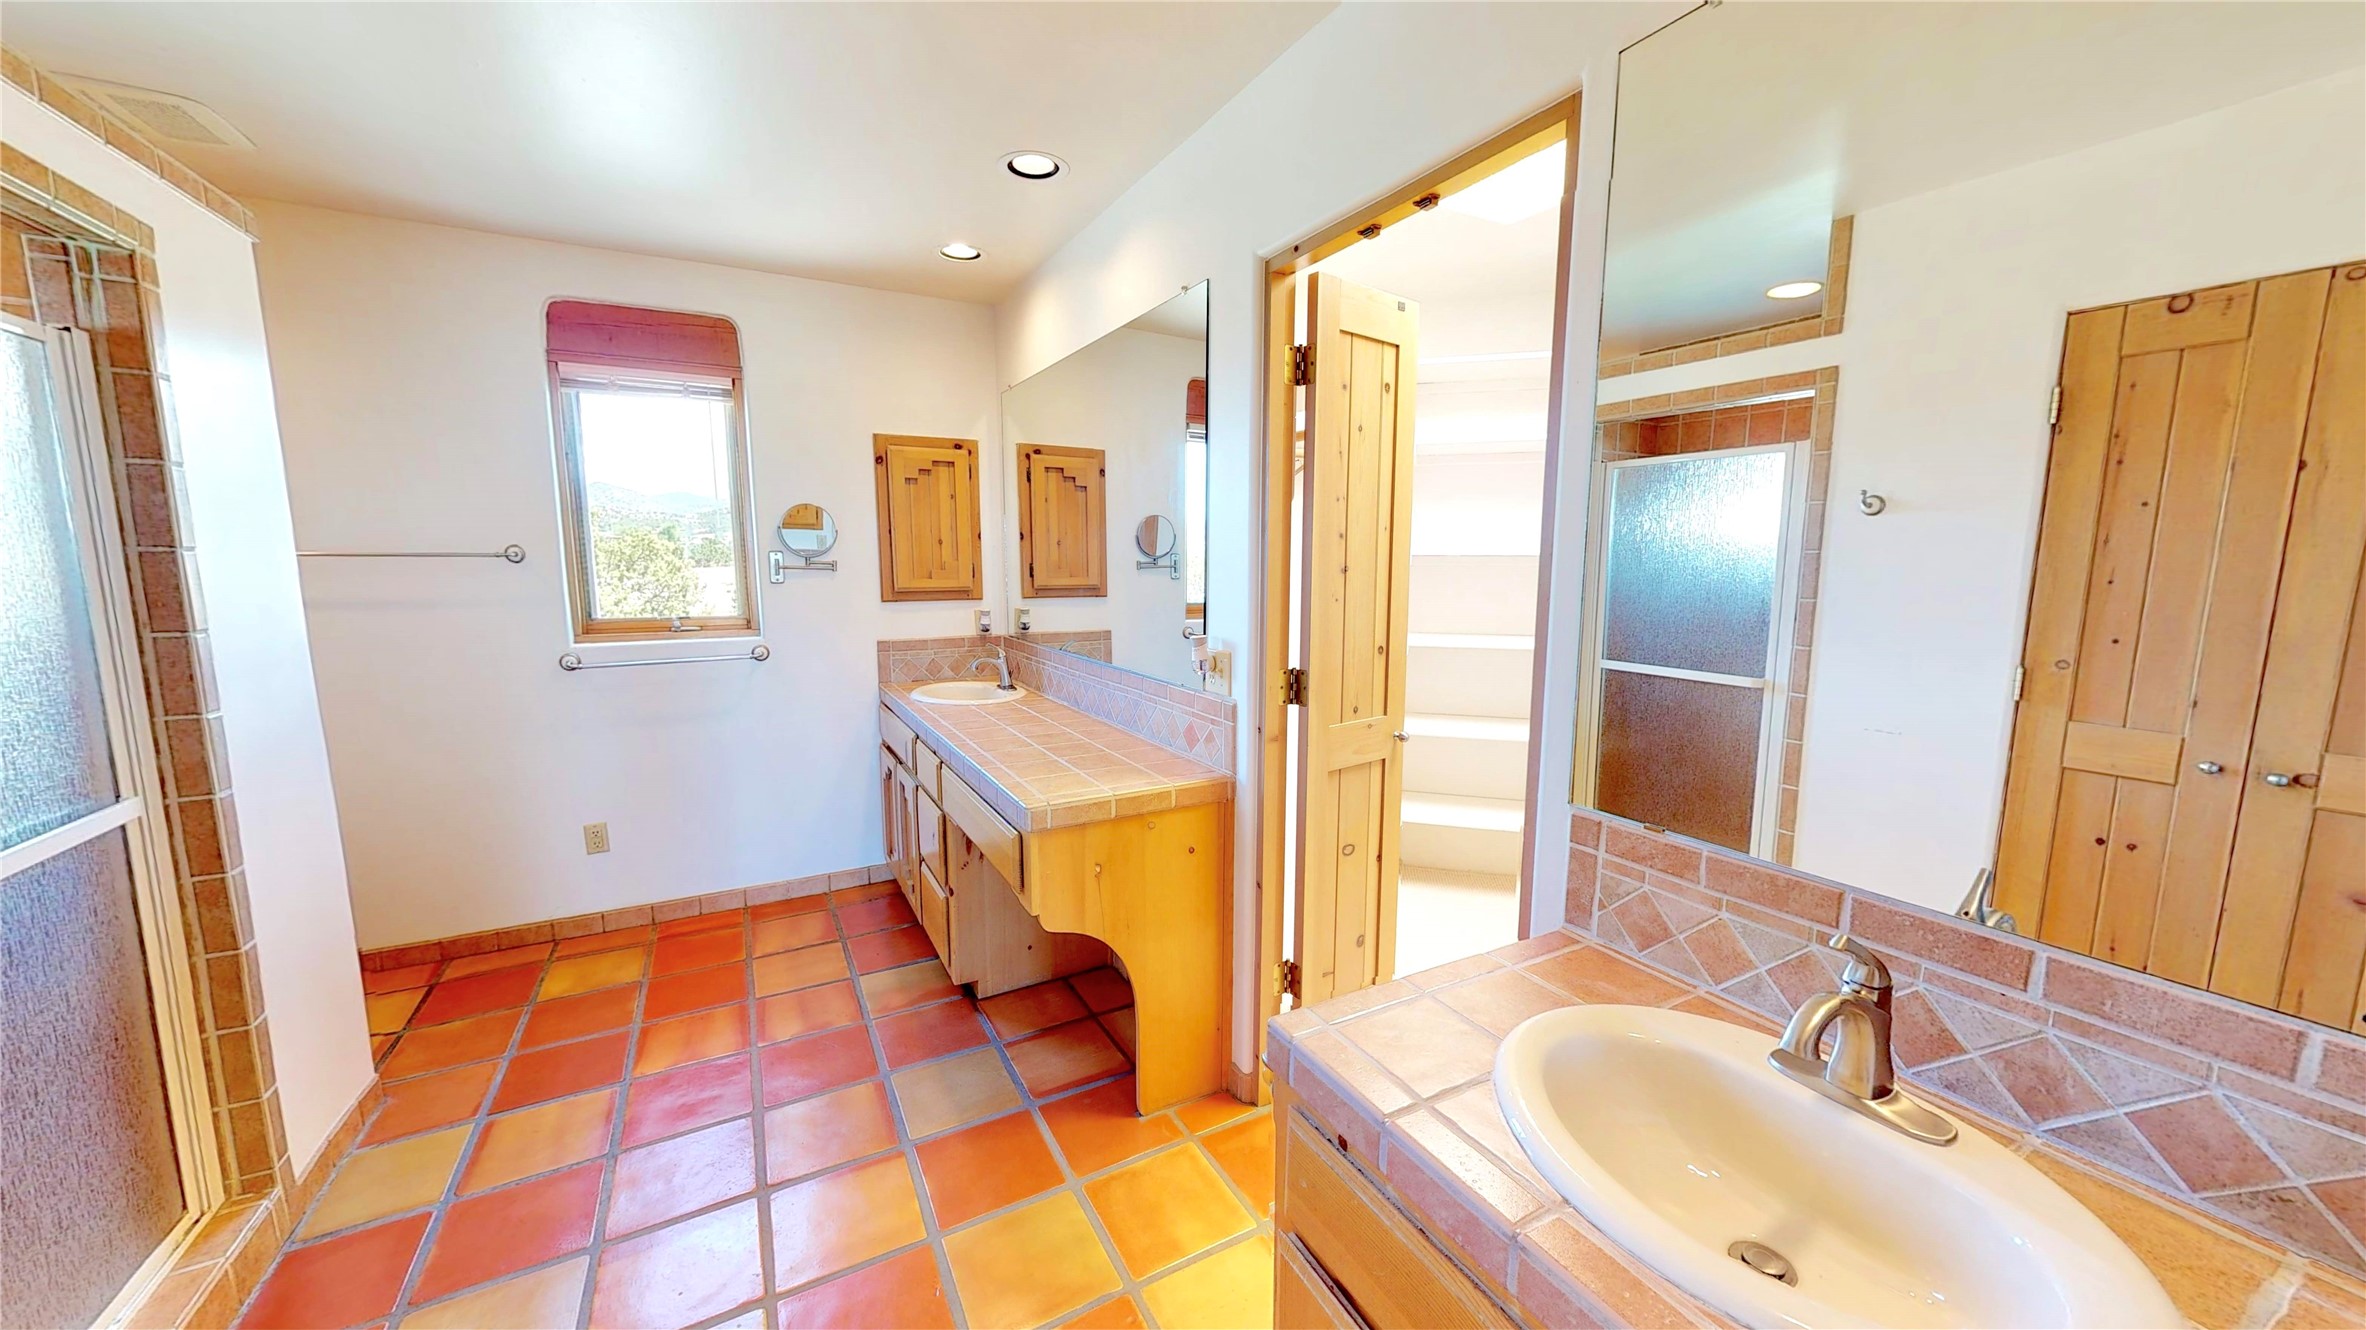 20 Puerto Road, Santa Fe, New Mexico 87508, 3 Bedrooms Bedrooms, ,2 BathroomsBathrooms,Residential,For Sale,20 Puerto Road,202220019